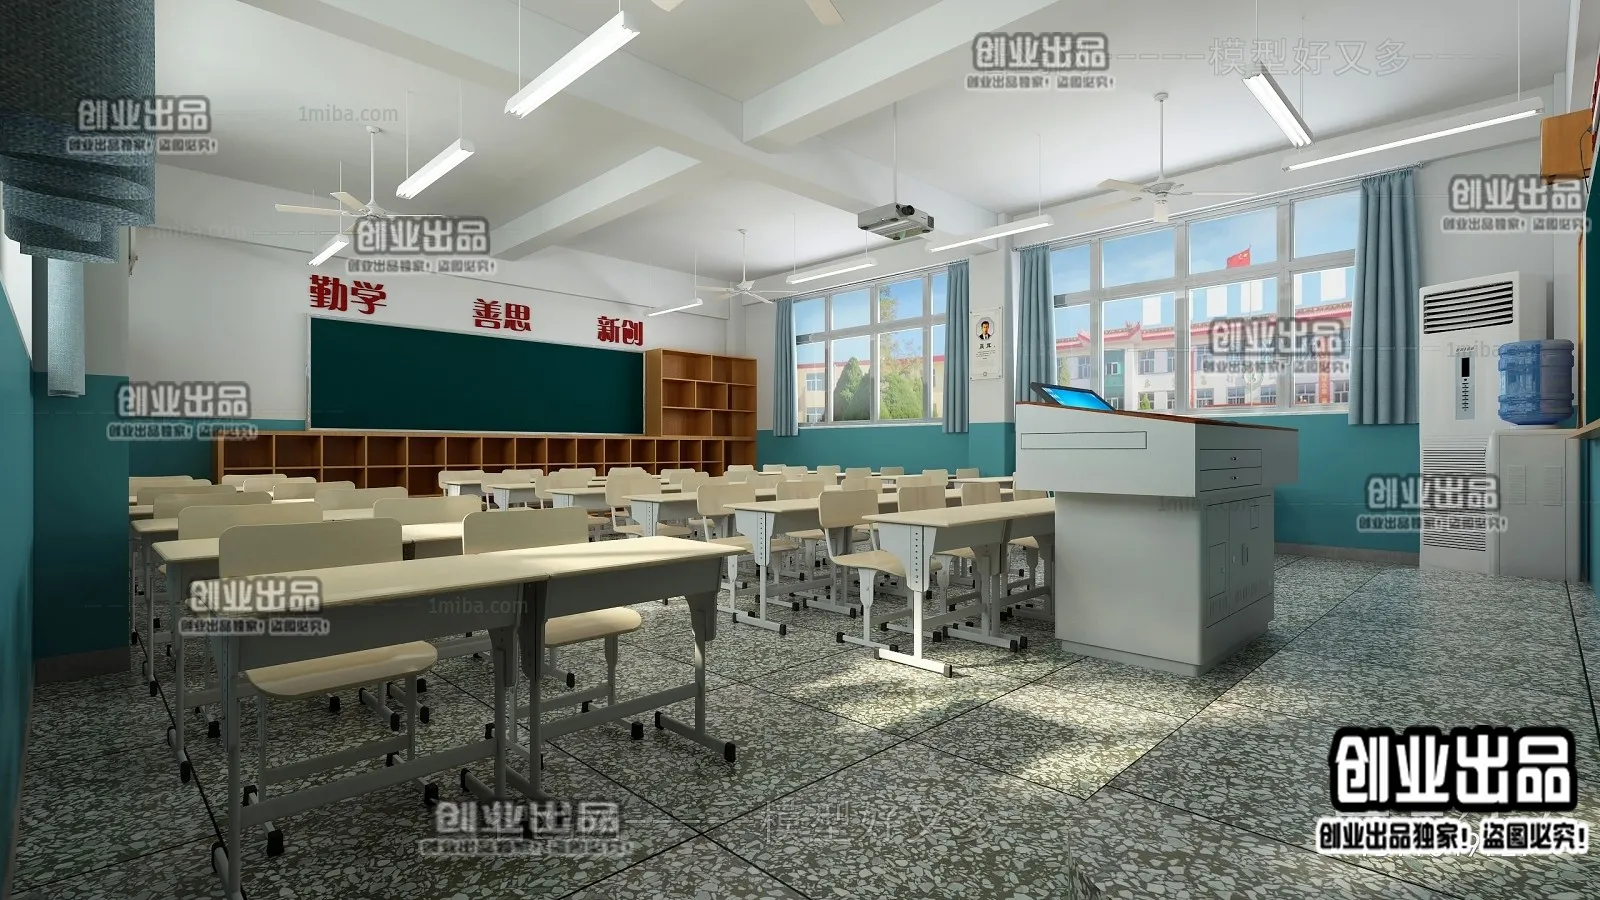 3D SCHOOL INTERIOR (VRAY) – CLASSROOM 3D SCENES – 016